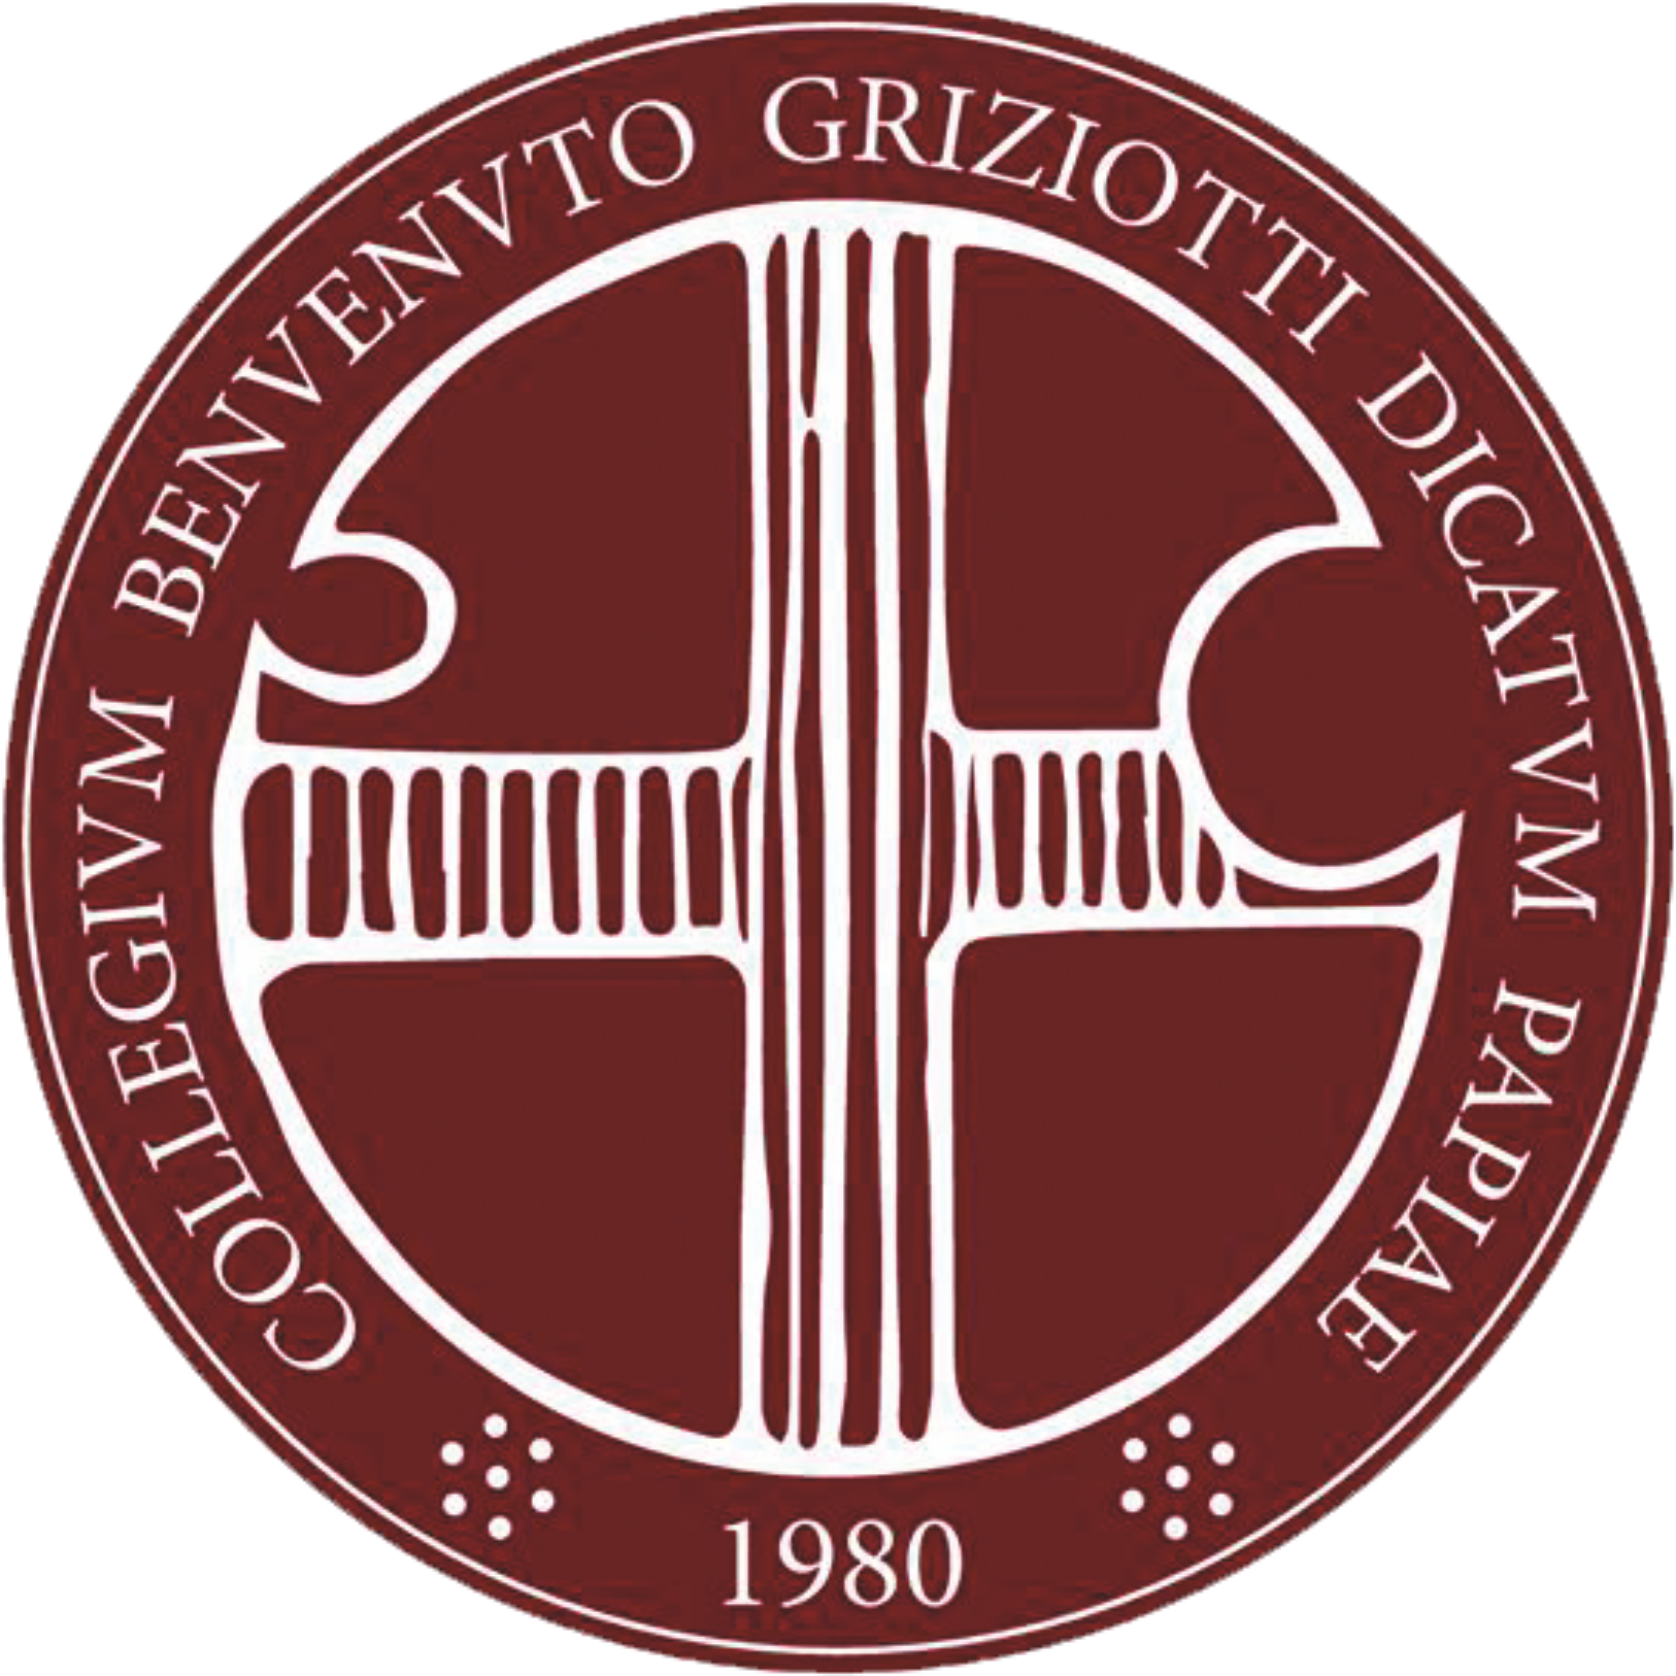 Collegio B. Griziotti